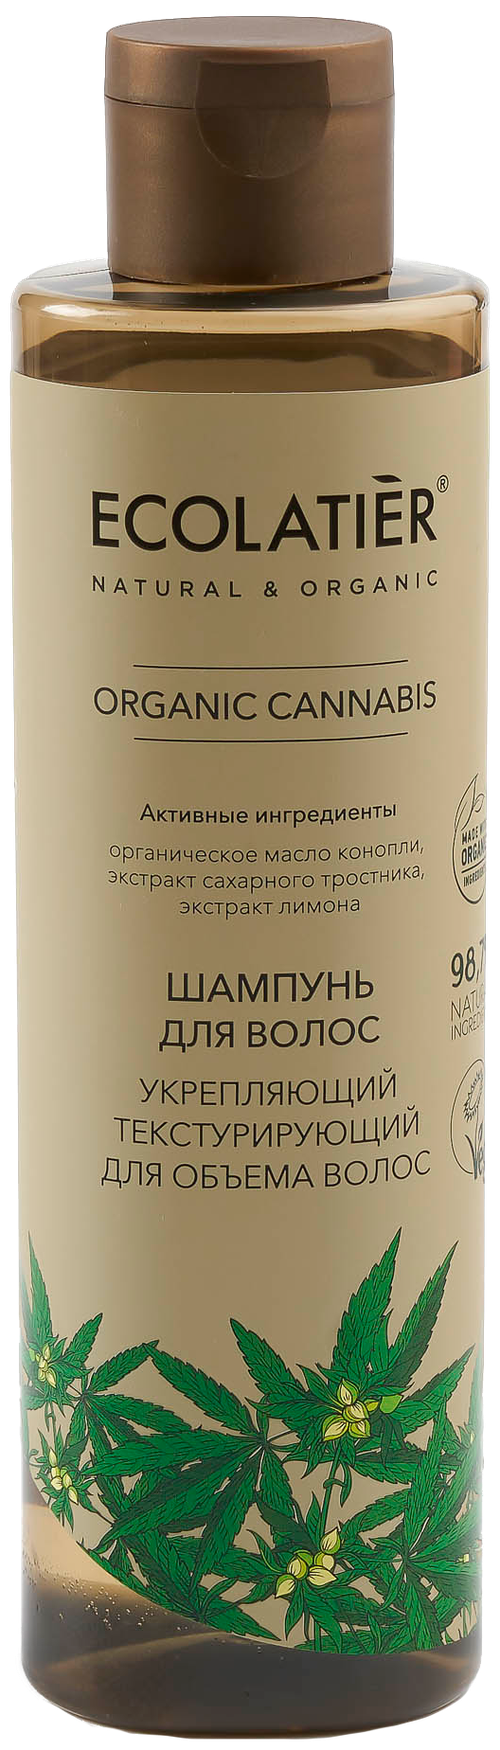 ECOLATIER шампунь Organic Cannabis Укрепляющий текстурирующий для объема волос, 250 мл